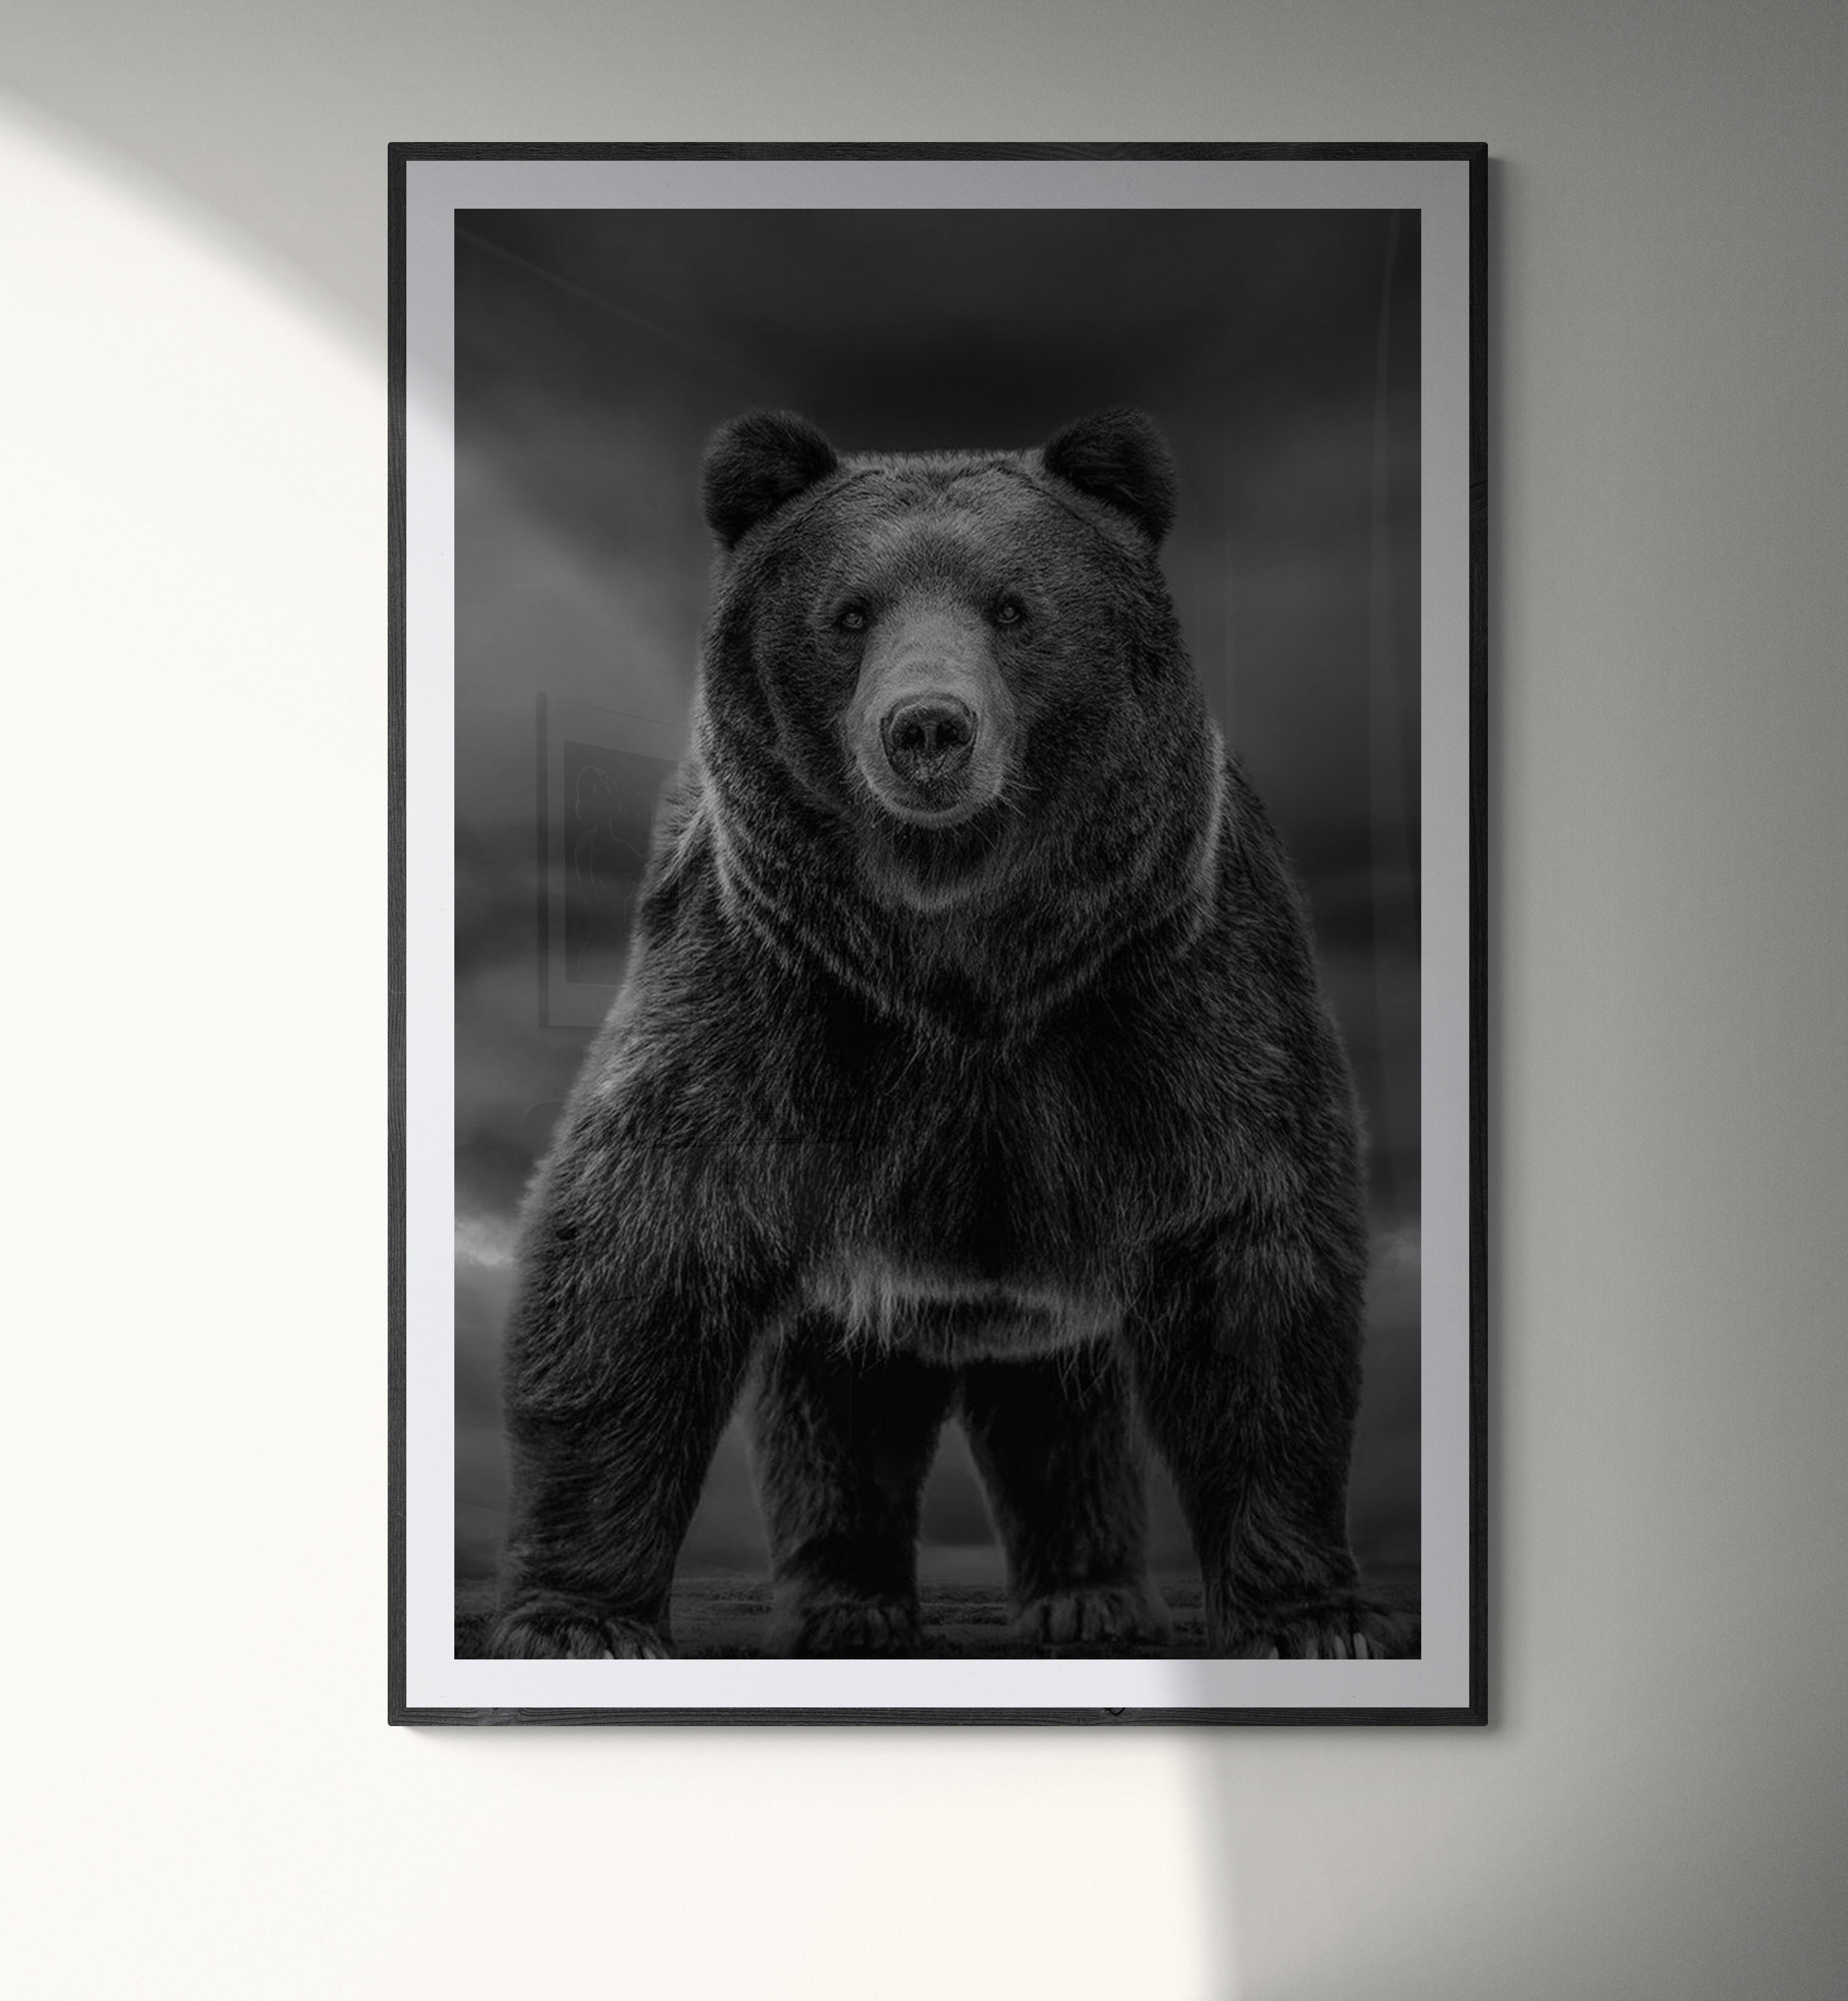 Dies ist eine zeitgenössische Fotografie eines Kodiakbären.  Dies wurde 2019 auf Kodiak Island gedreht. 
90x60 
Auflage von 7
Signiert und nummeriert
Archivalisches Pigmentpapier
Einrahmung verfügbar. Erkundigen Sie sich nach den Preisen. 


Shane